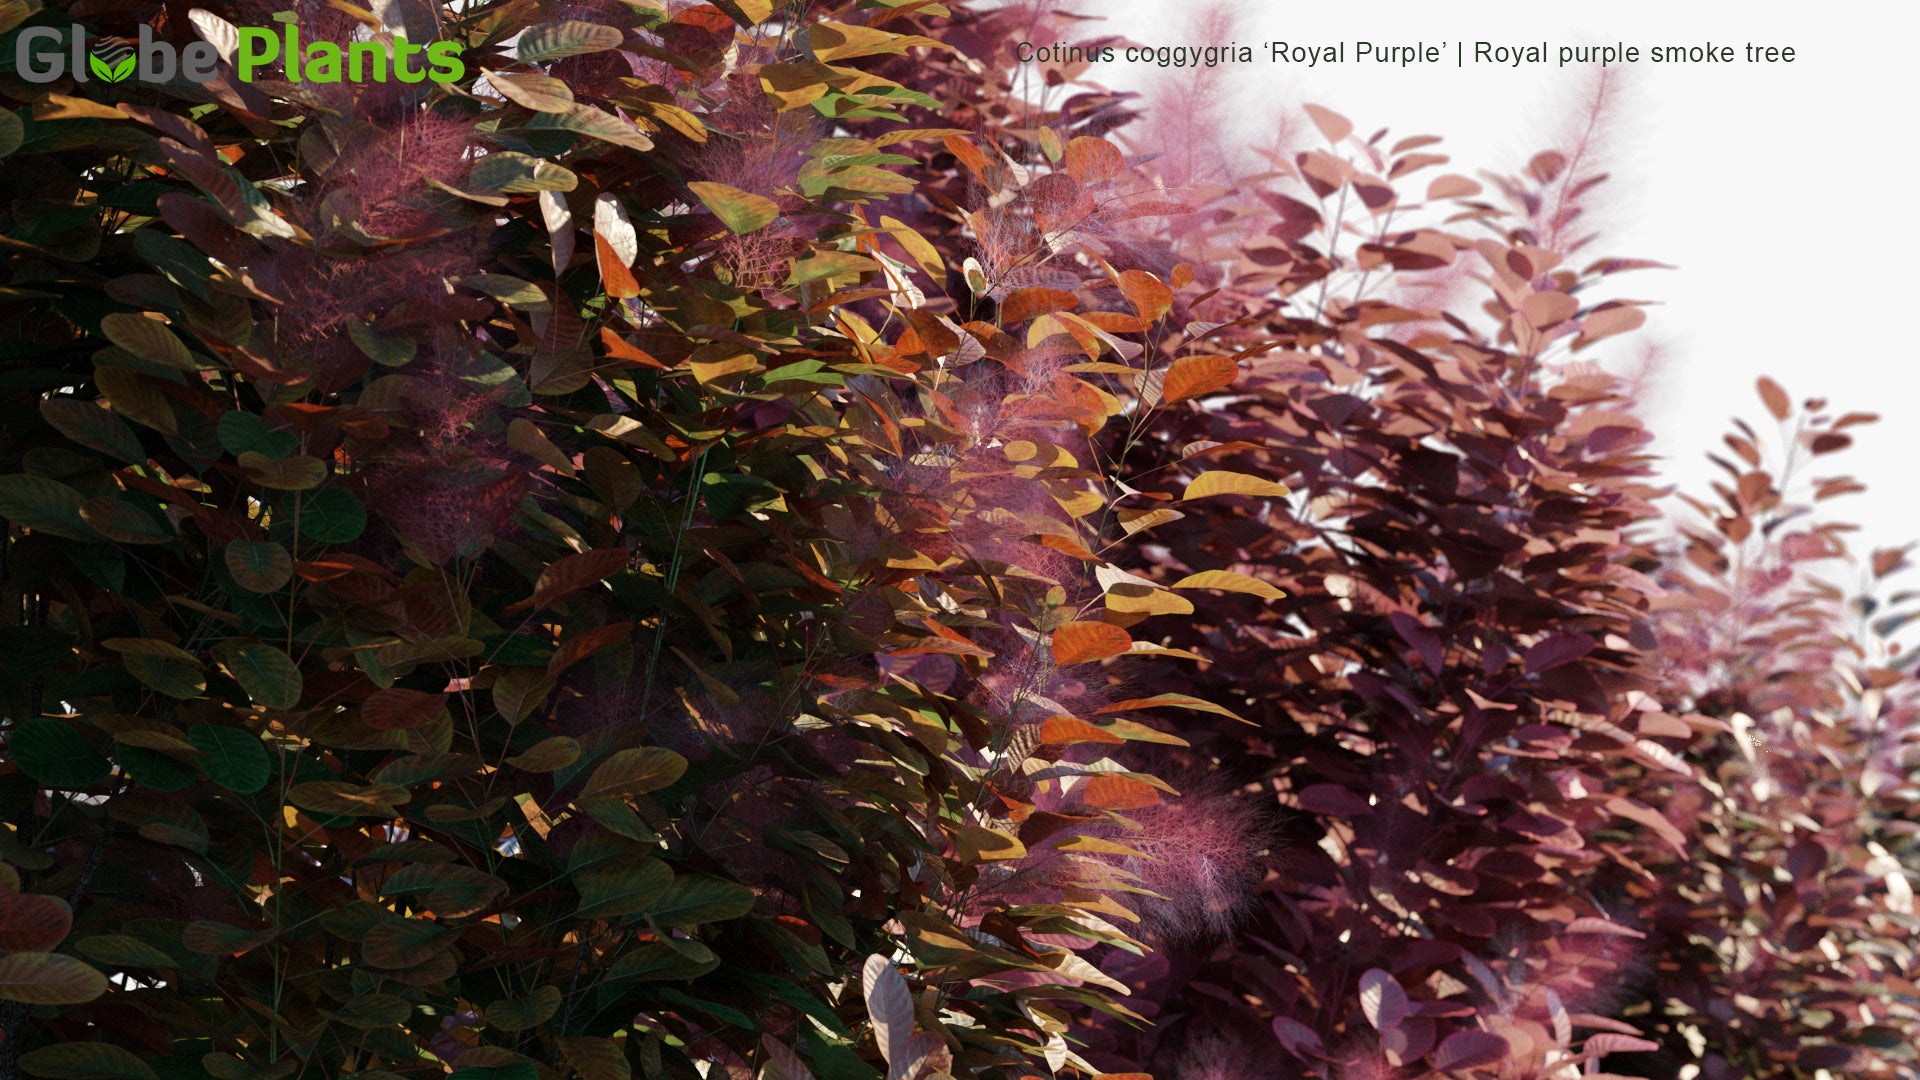 Cotinus Coggygria 'Royal Purple' - Royal Purple Smoke Tree, Smokebush